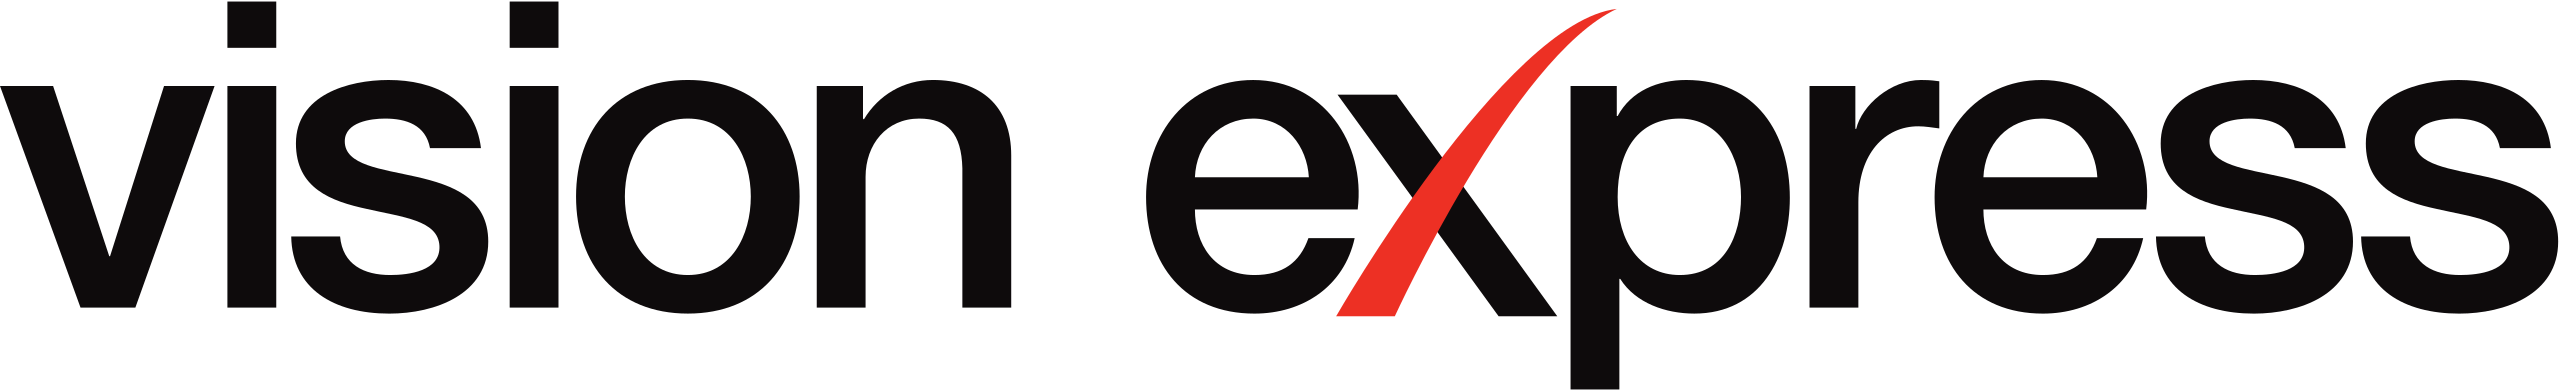 vision-express logo